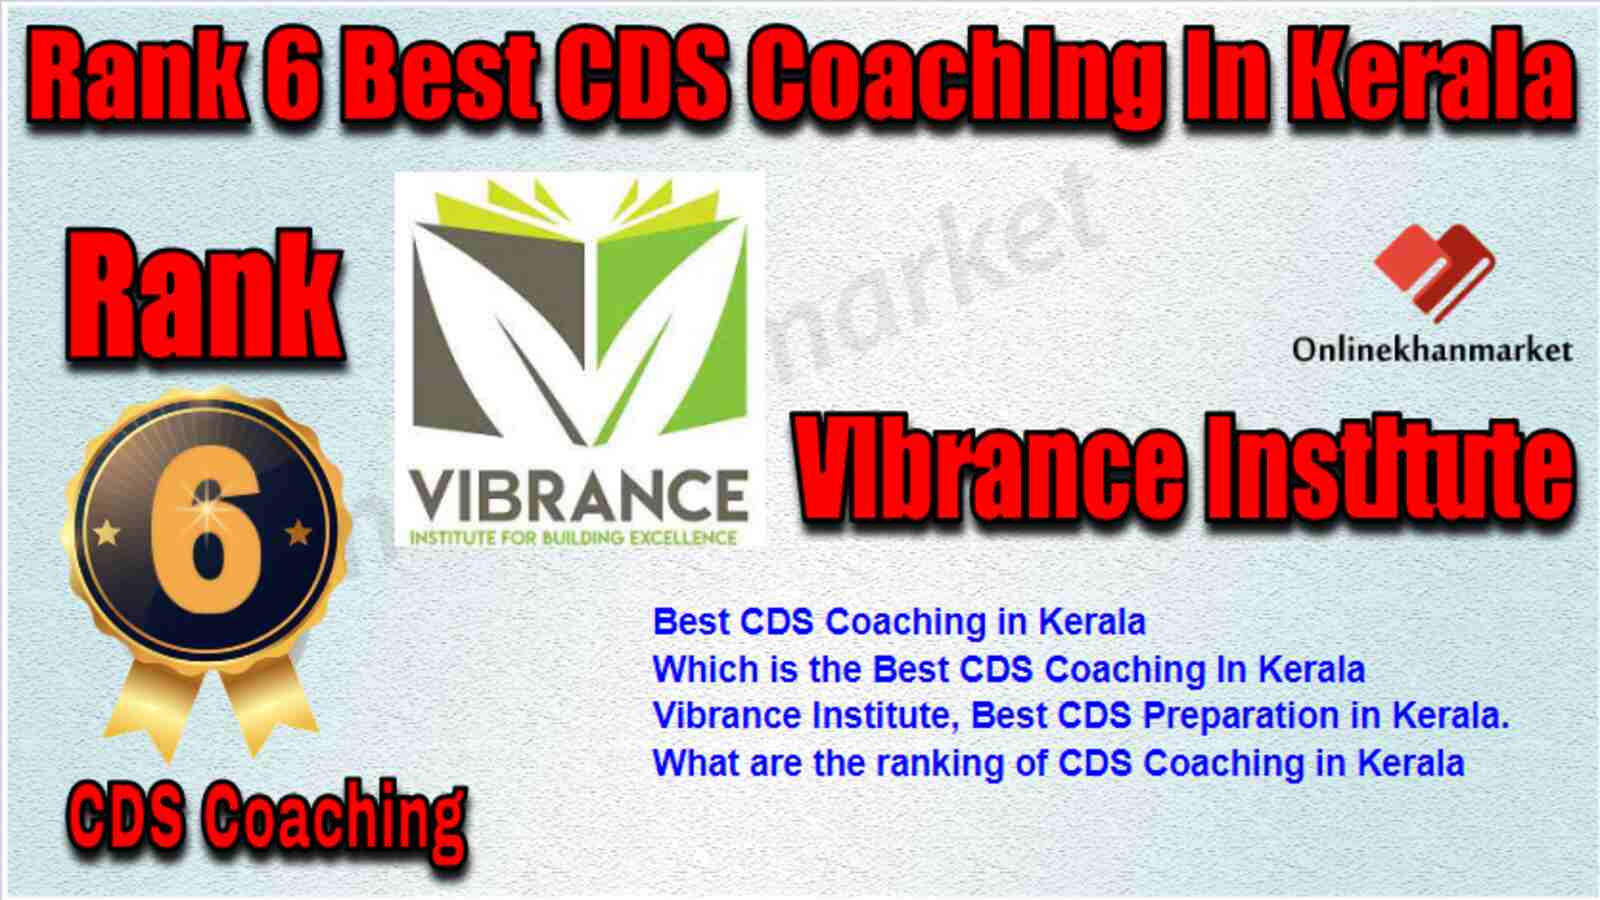 Rank 6 best CDS Coaching in Kerala